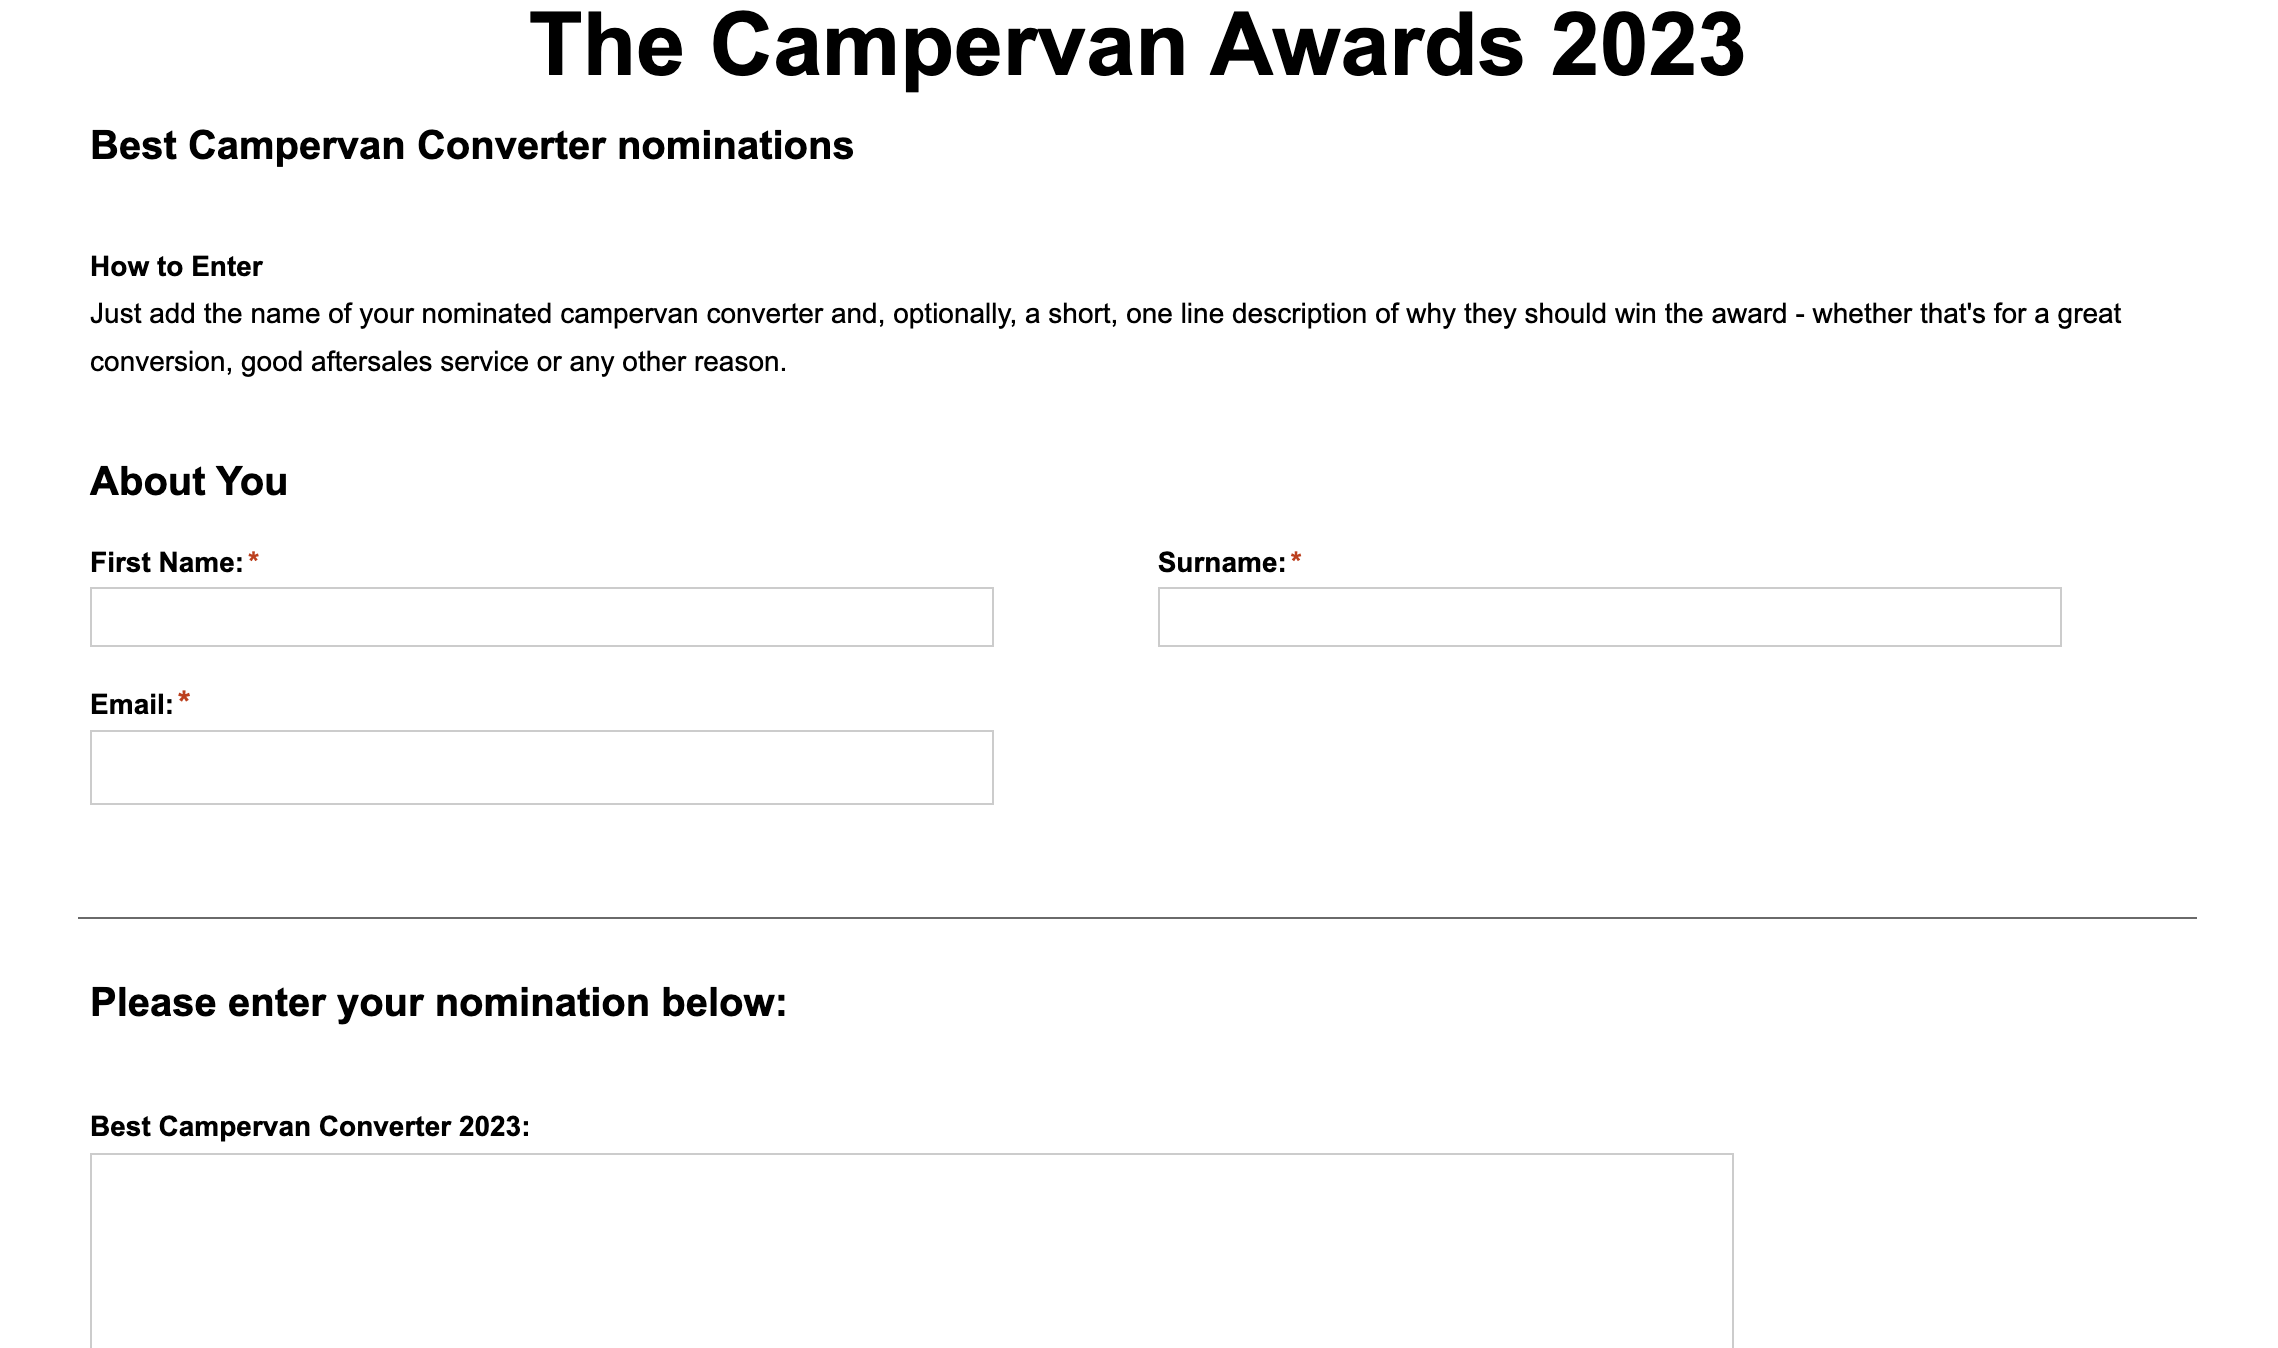 Campervan Awards 2023